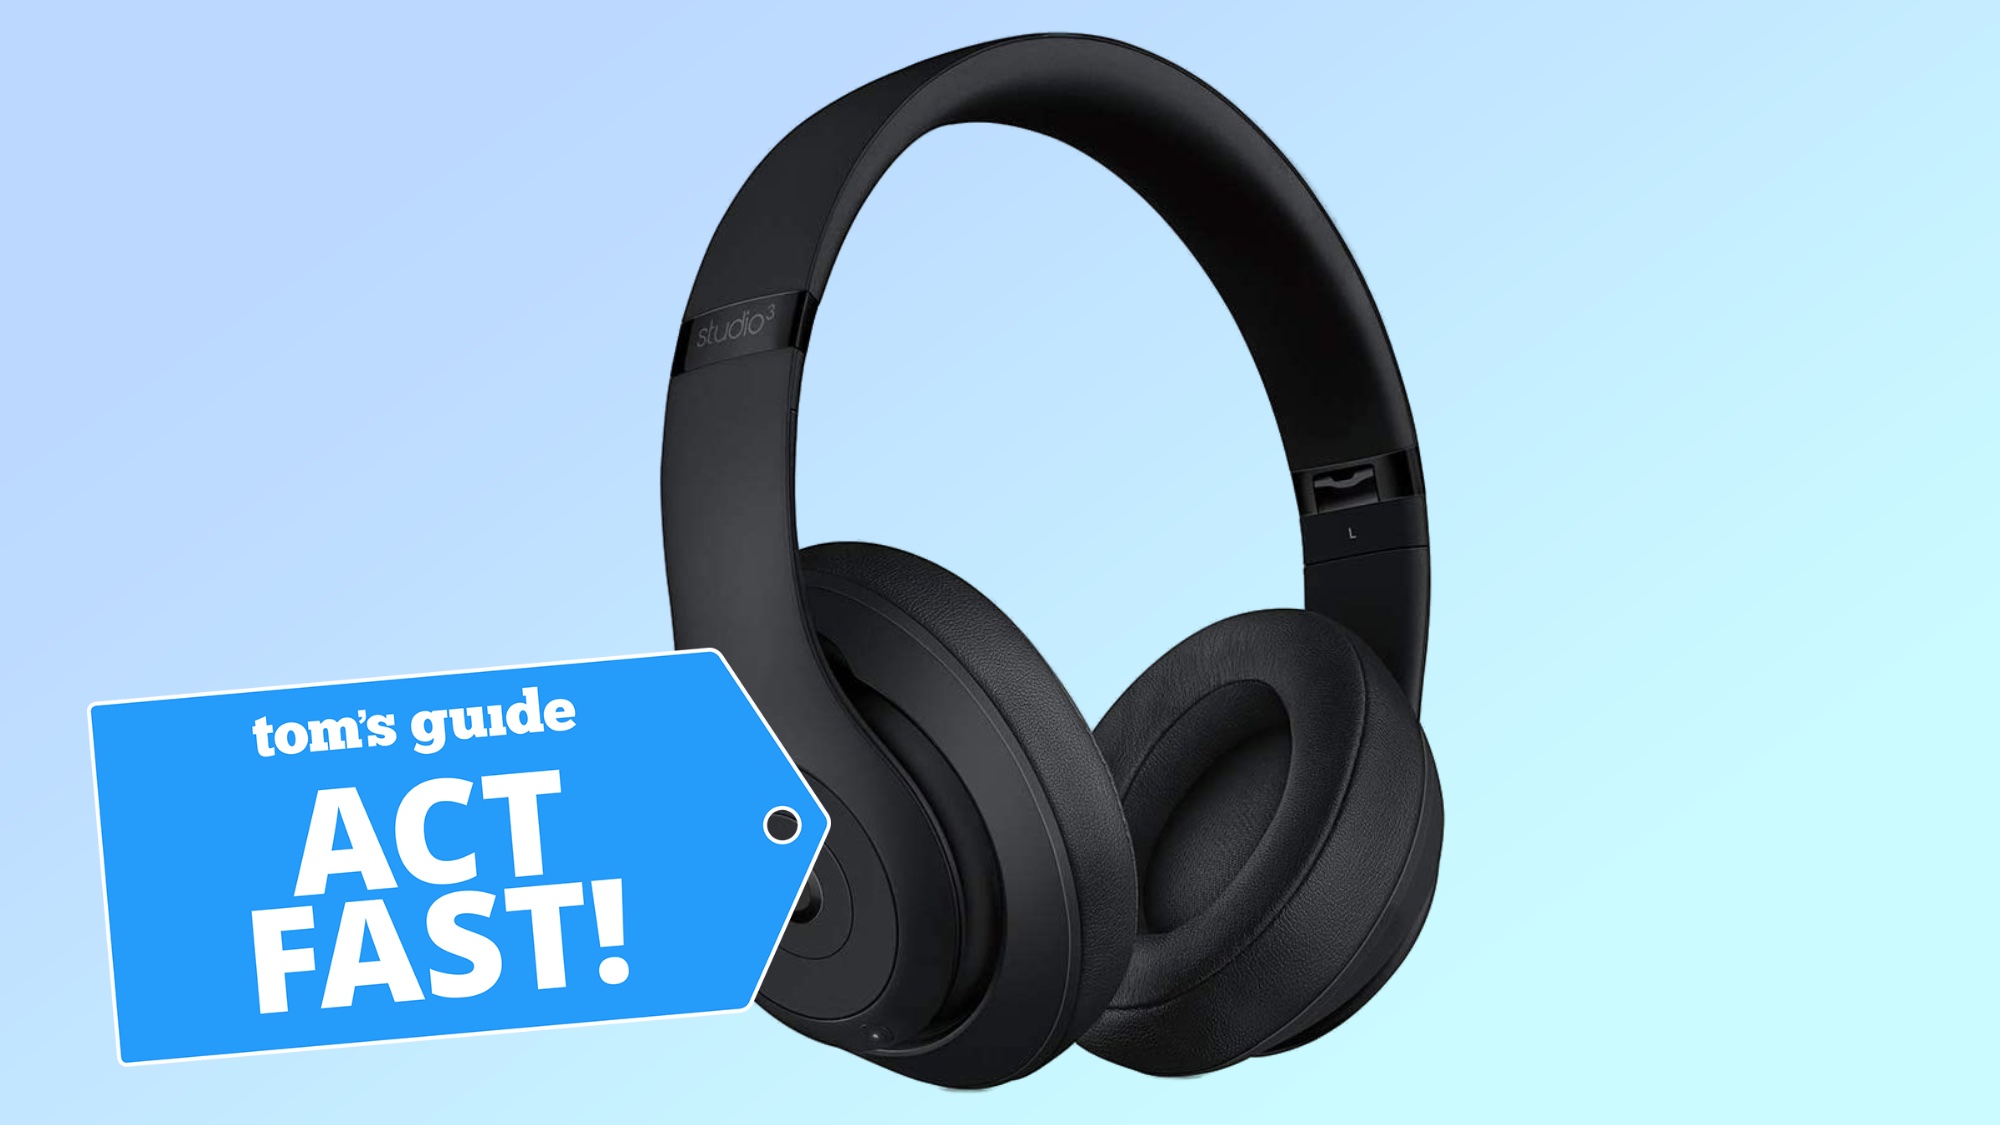 Beats Studio 3 headphones deal